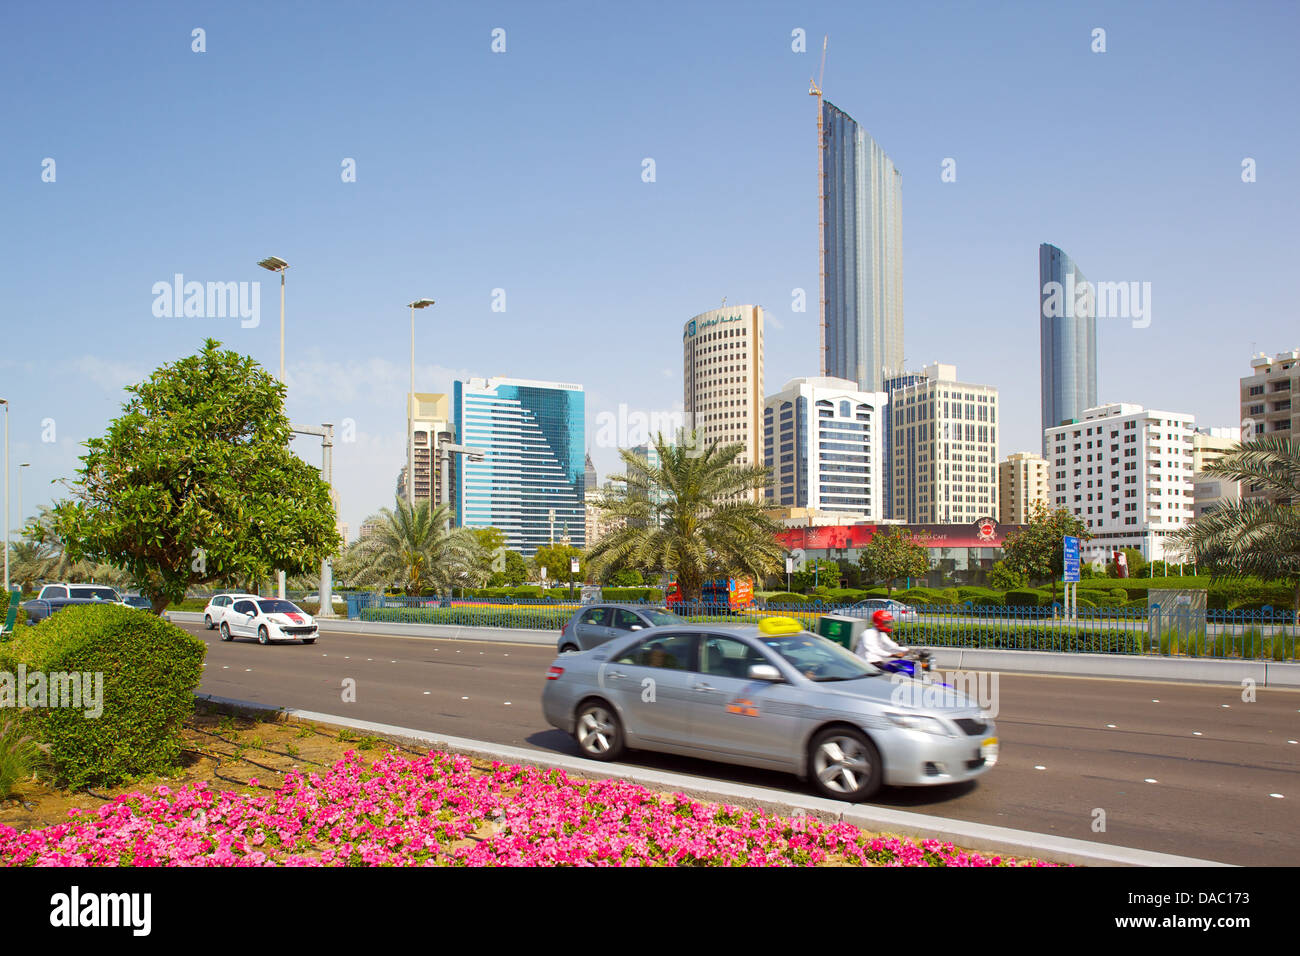 L'architecture contemporaine le long de la Corniche, Abu Dhabi, Émirats arabes unis, Moyen Orient Banque D'Images